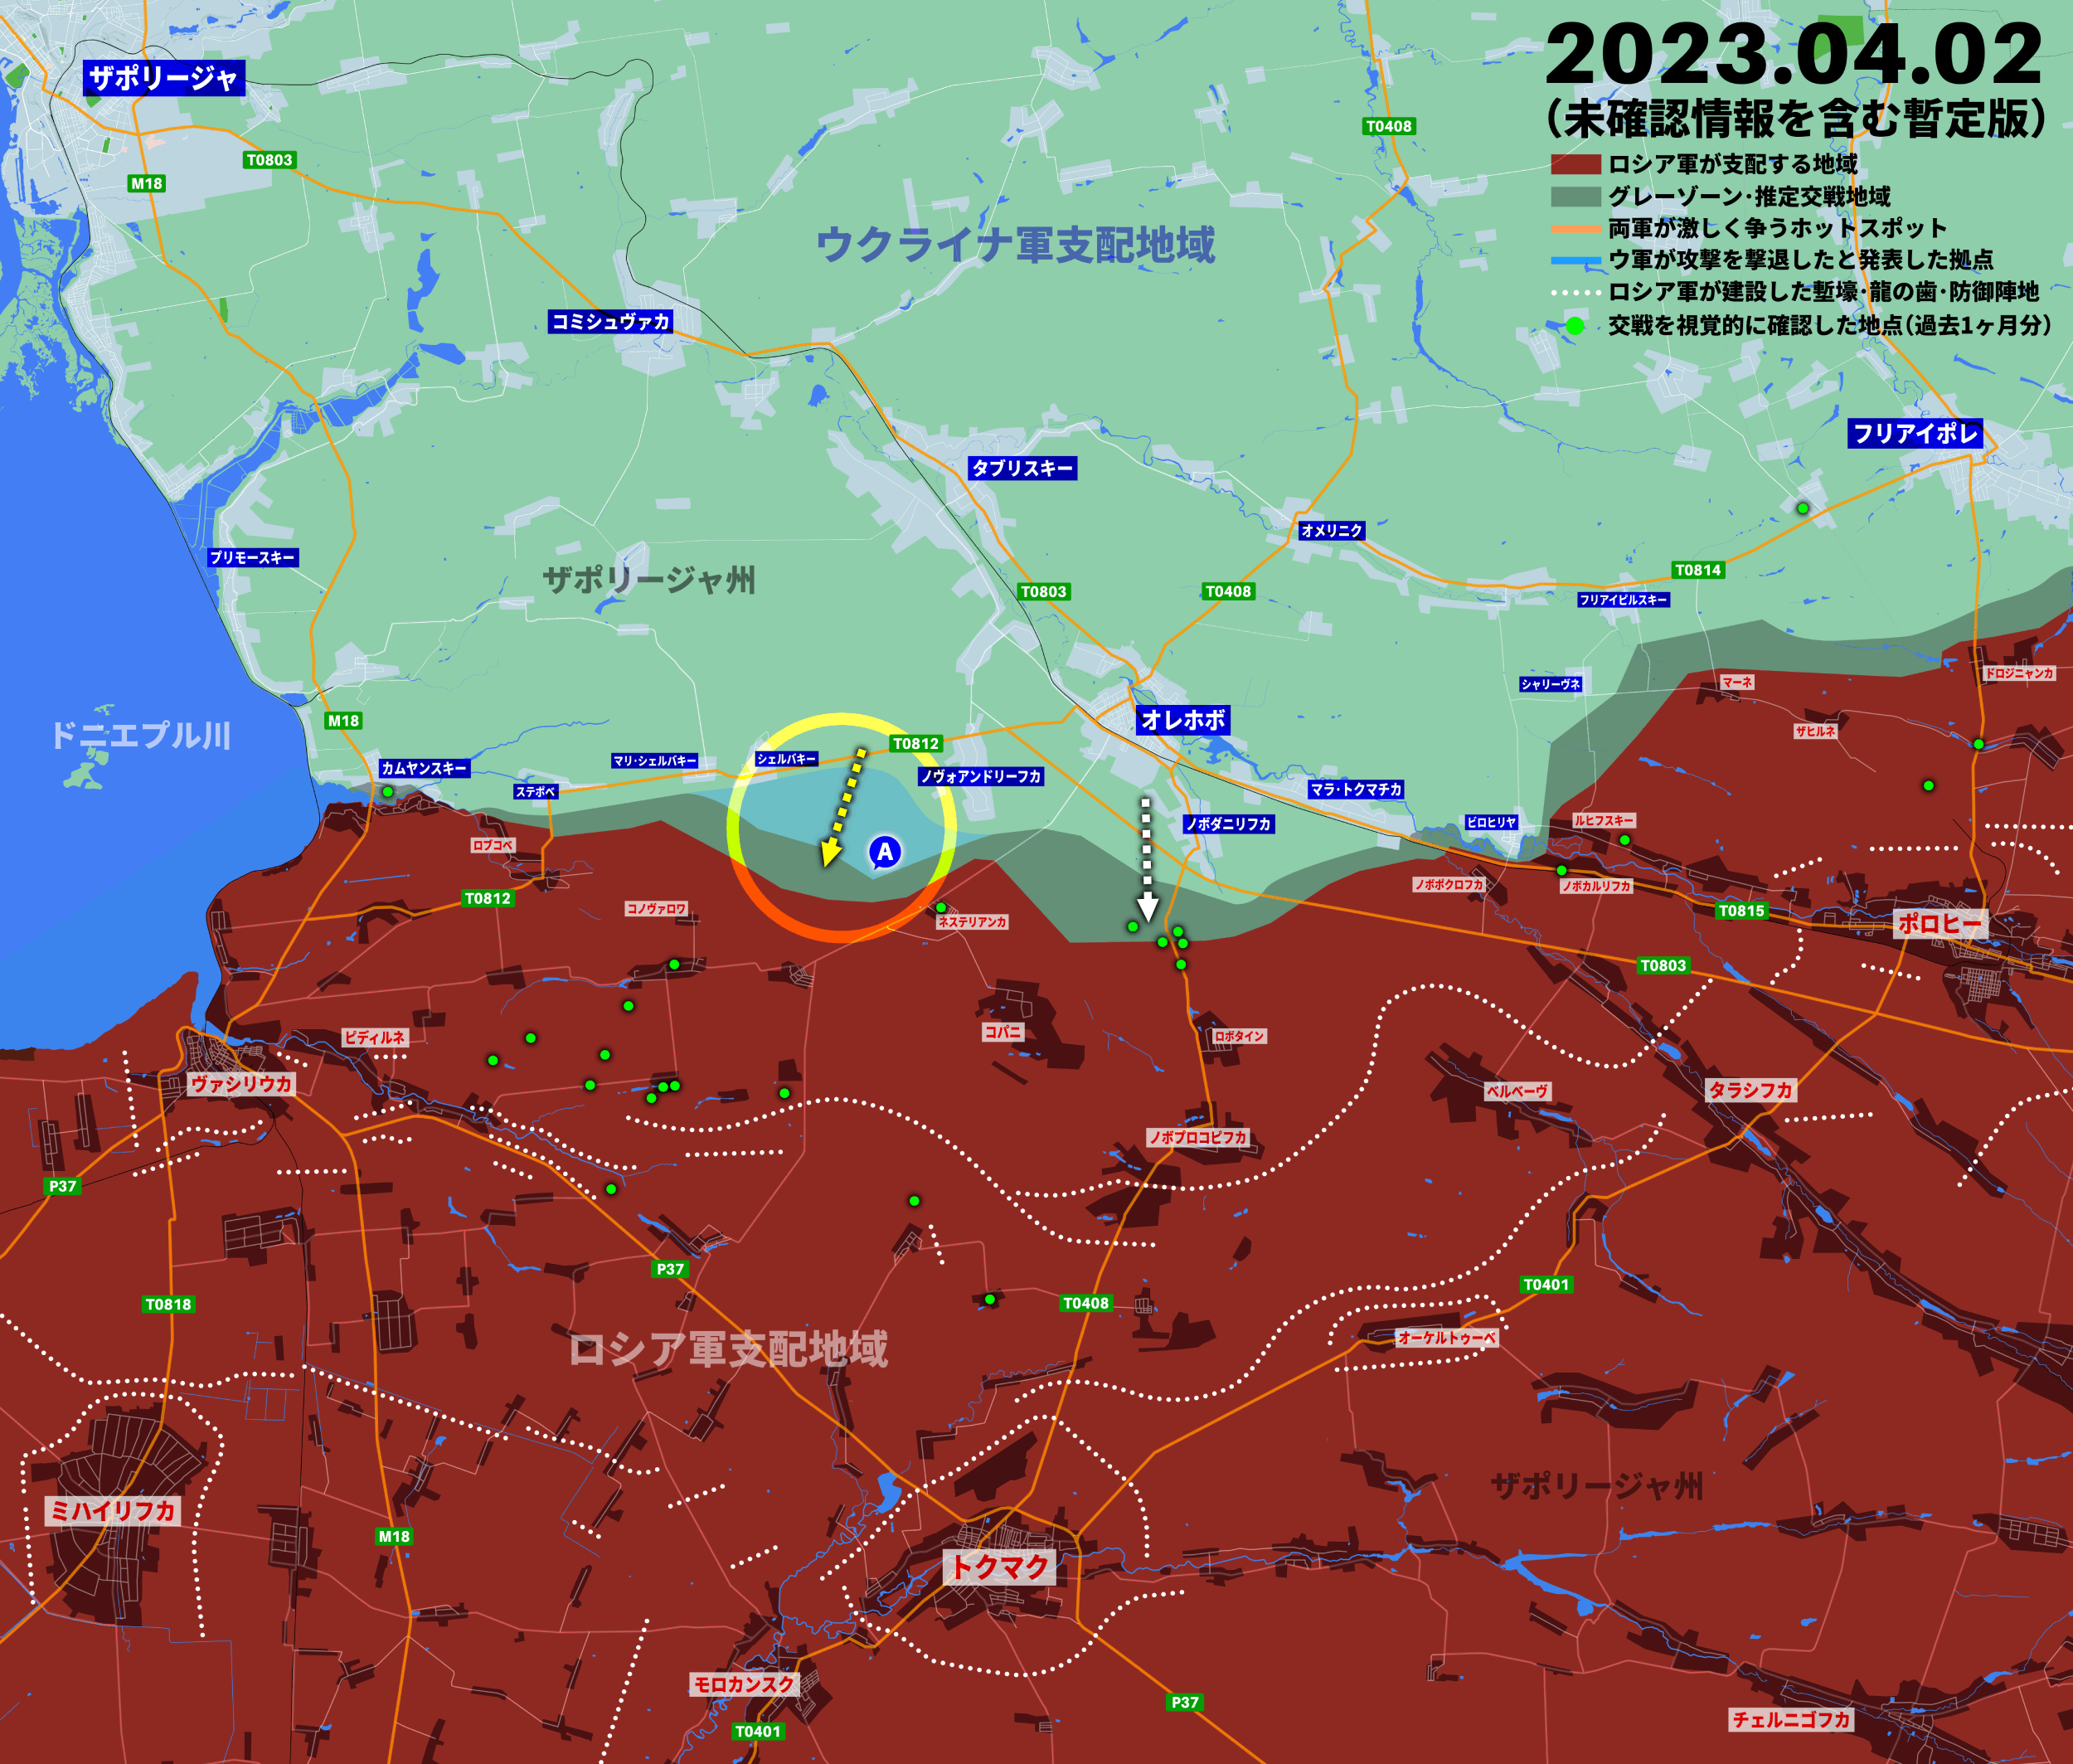 ウクライナ侵攻402日目の戦況、ザポリージャやアウディーイウカで動き